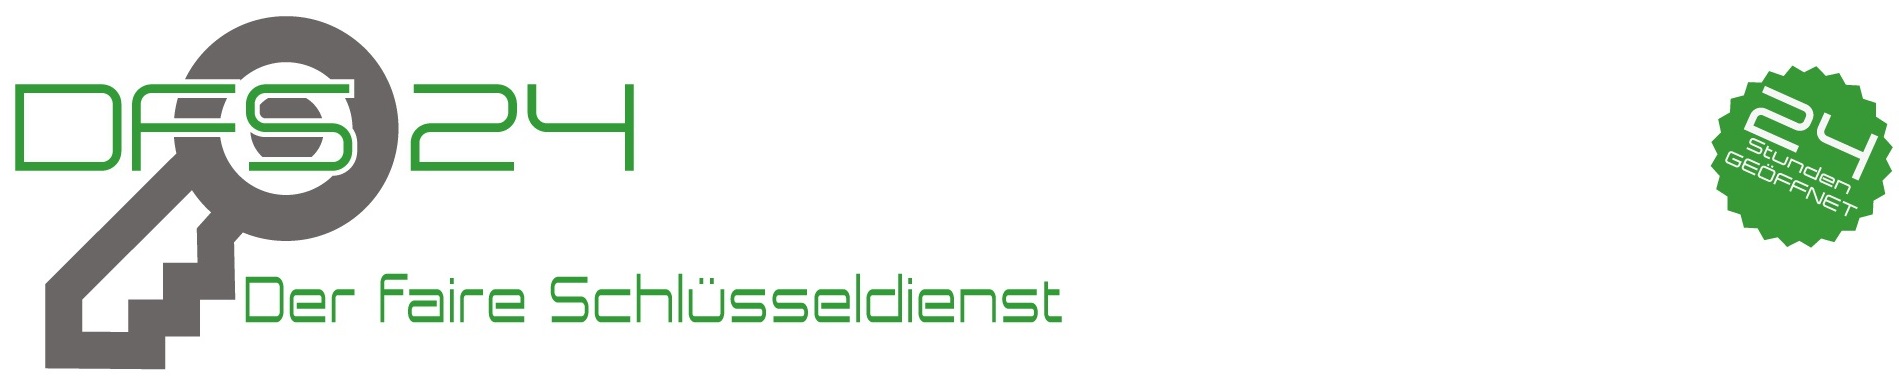 schlüsseldienst gladbeck logo